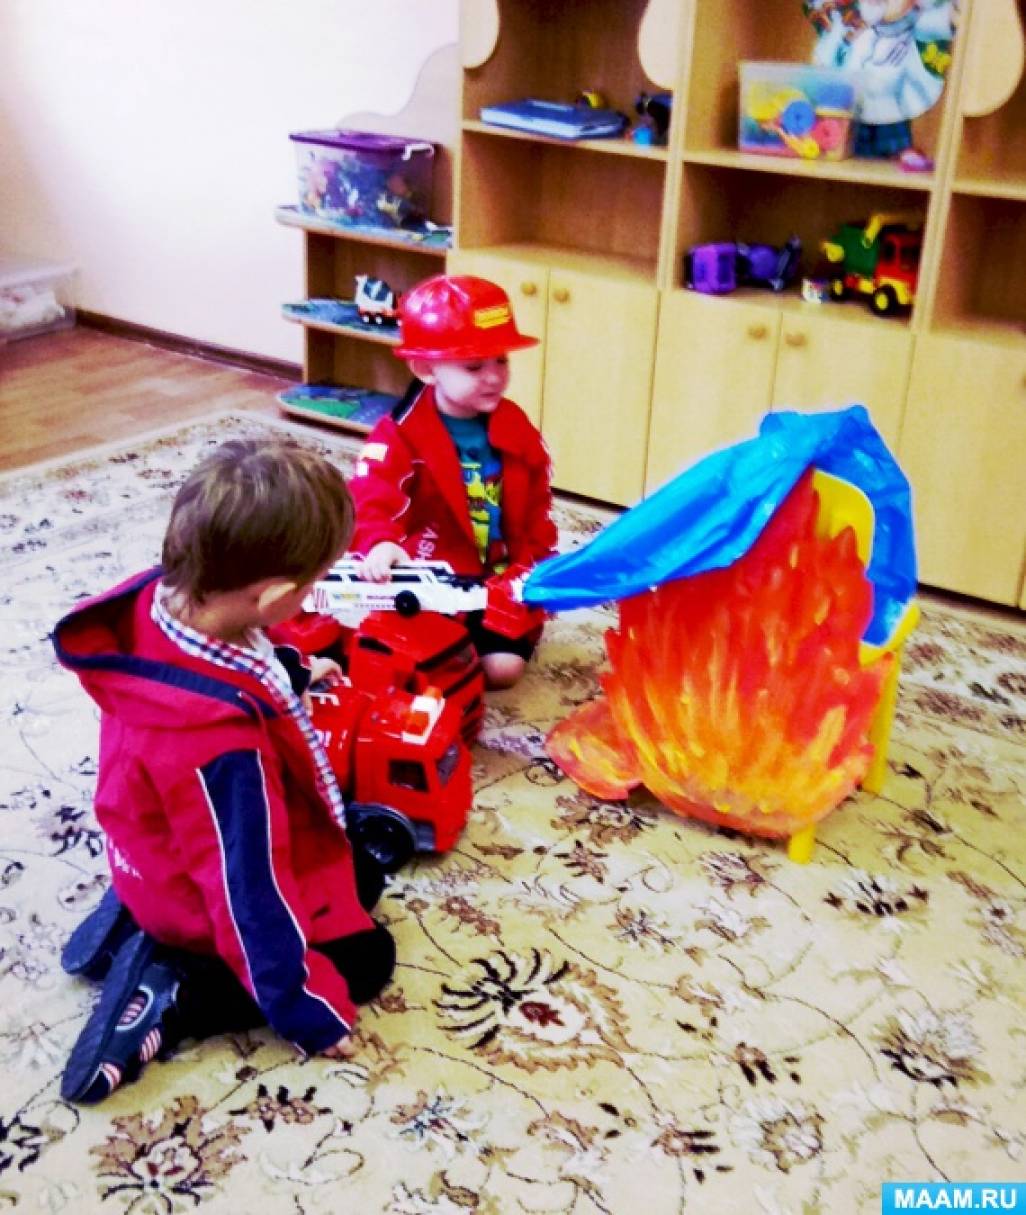 Развлечения обж. Пожарная безопасность Первач младшая группа. Занятия в детском саду пожарная безопасность. Занятие с детьми по пожарной безопасности в детском саду. Пожарная безопасность во второй младшей группе.